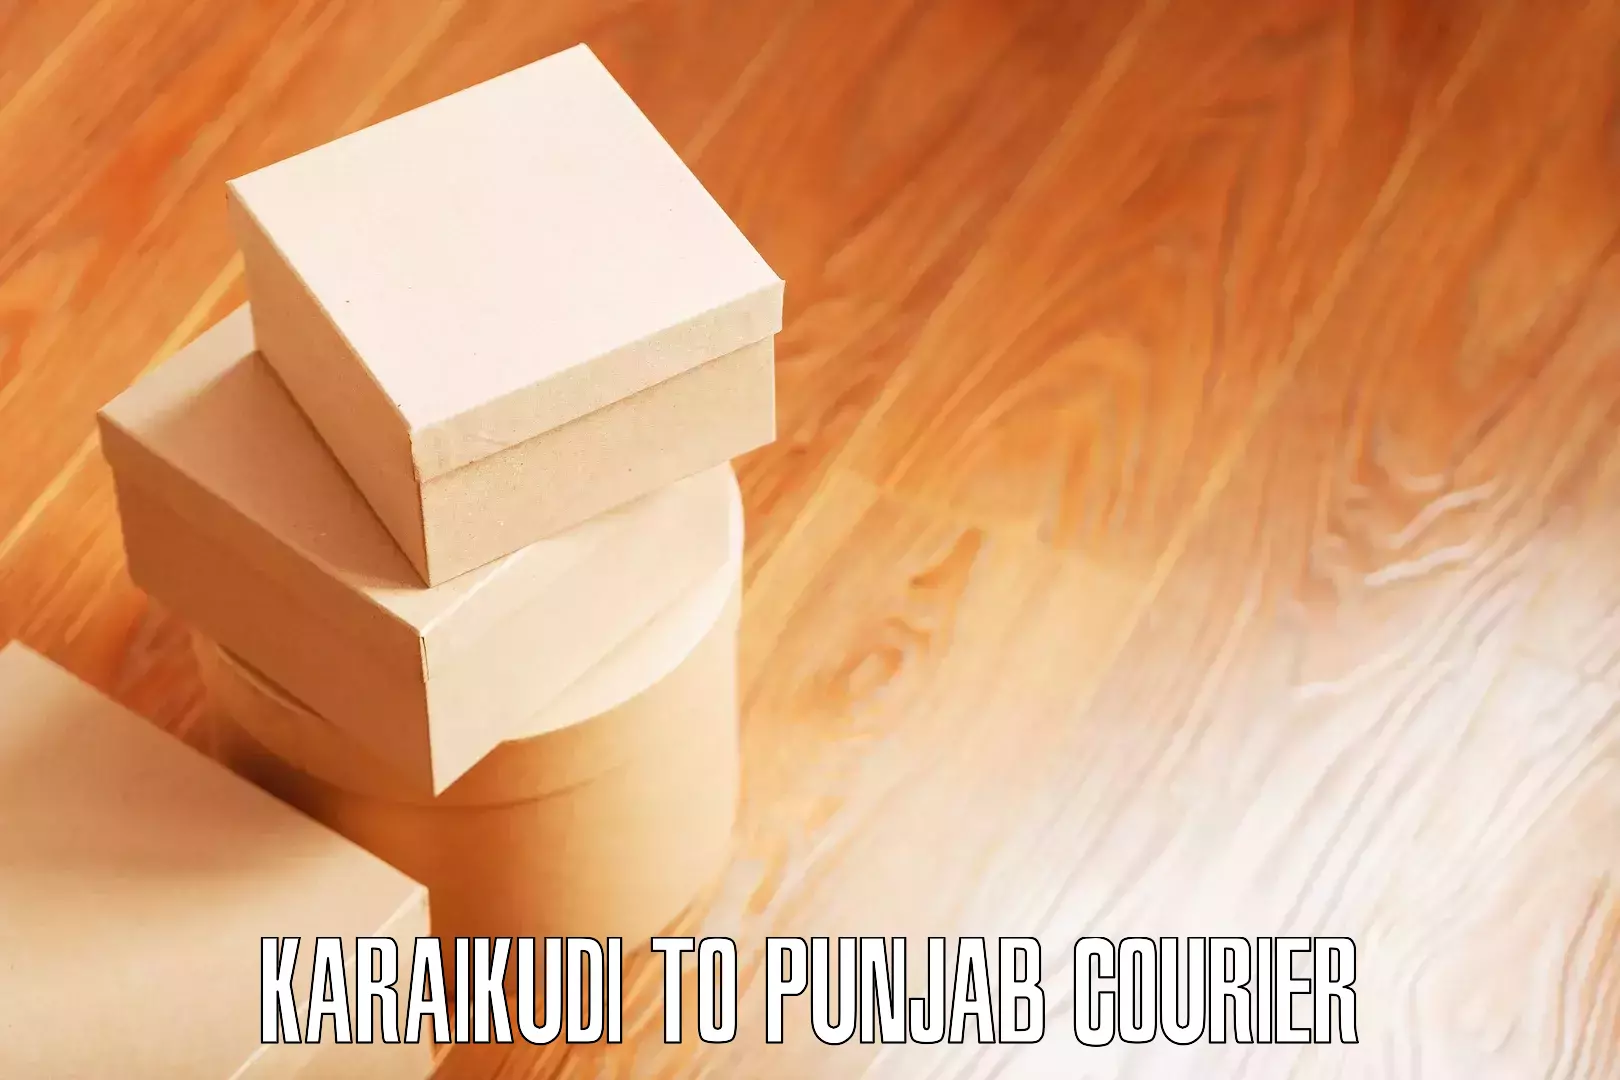 Efficient moving and packing Karaikudi to Punjab